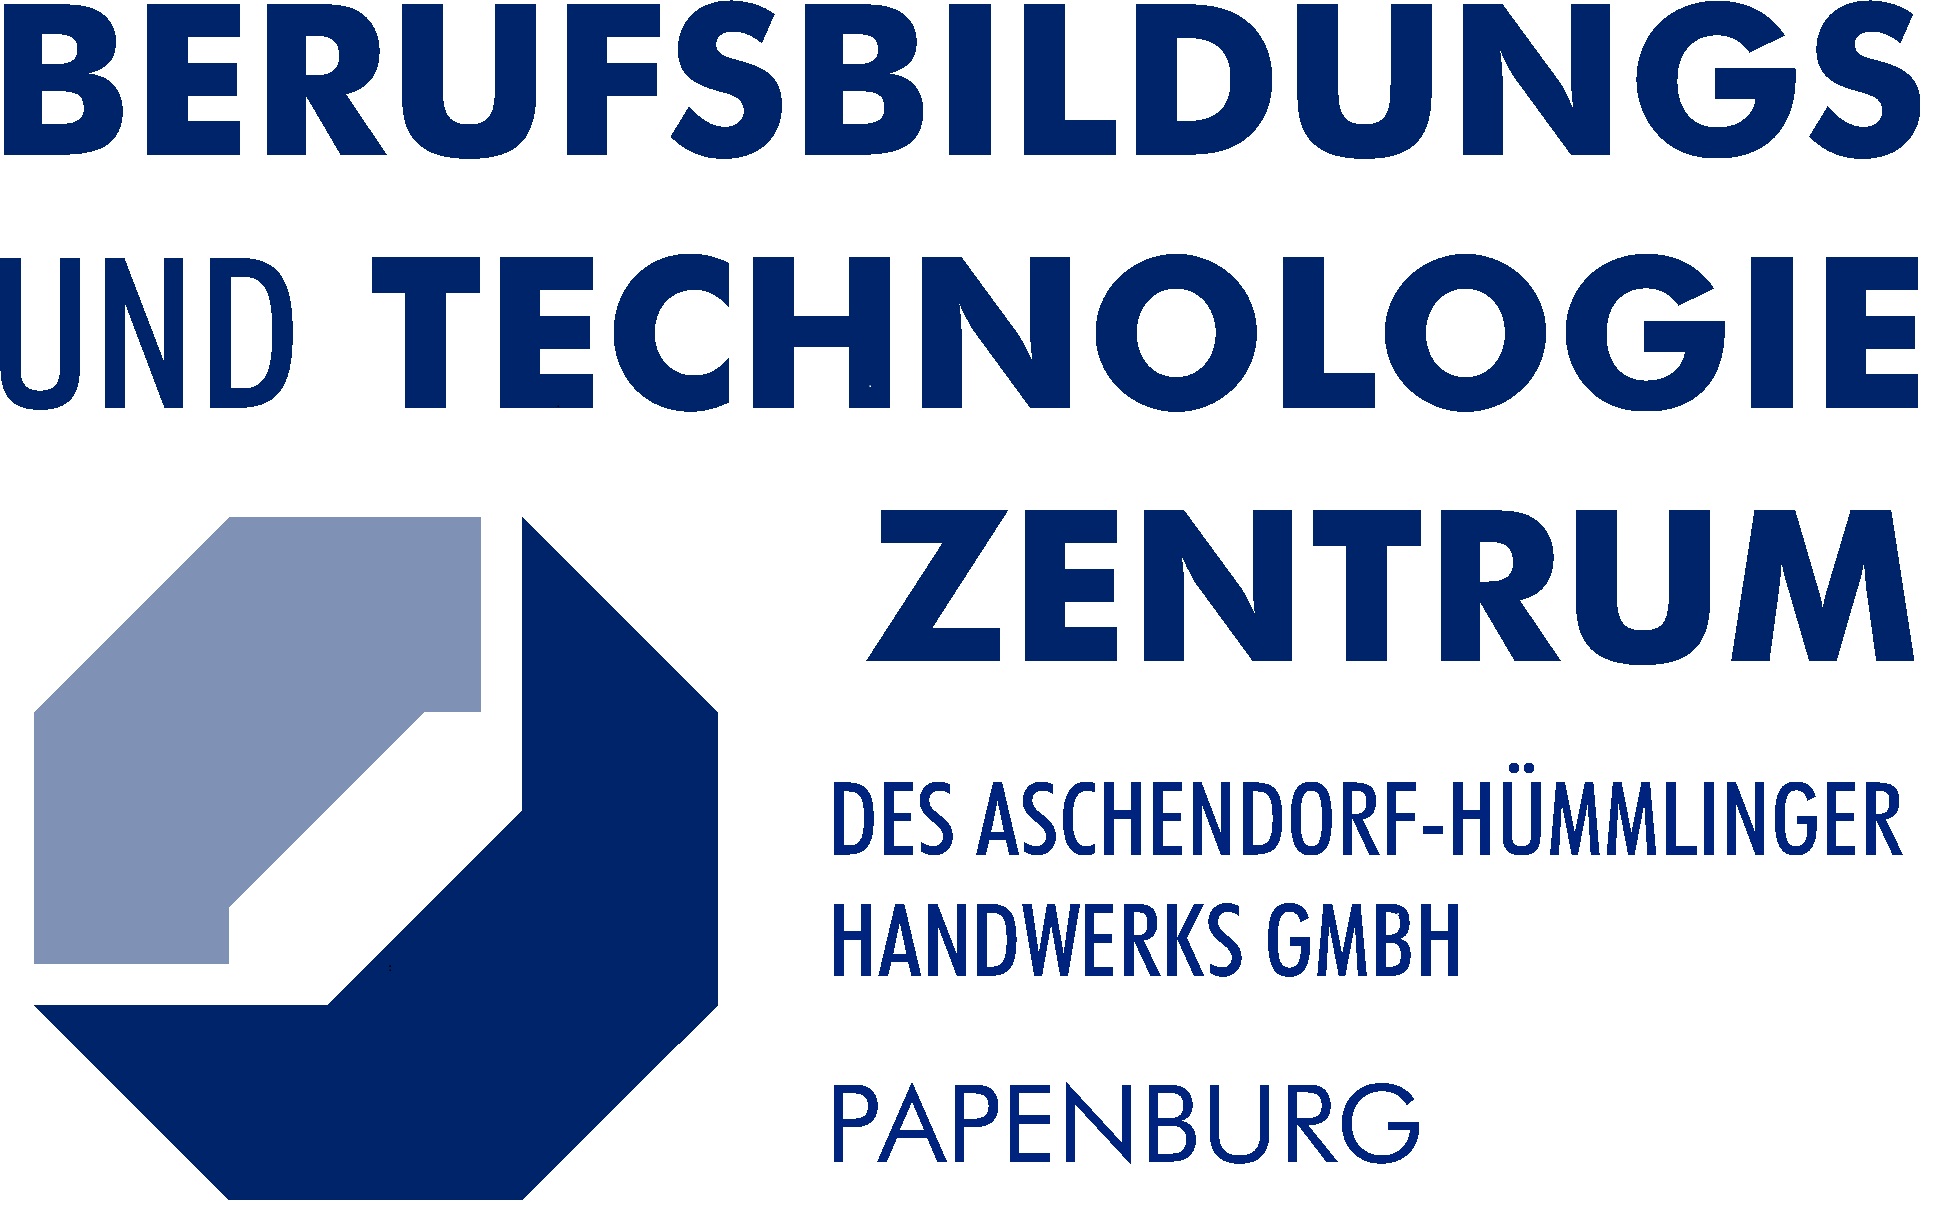 Berufsbildungs- und Technologiezentrum des Aschendorf-Hümmlinger Handwerks GmbH